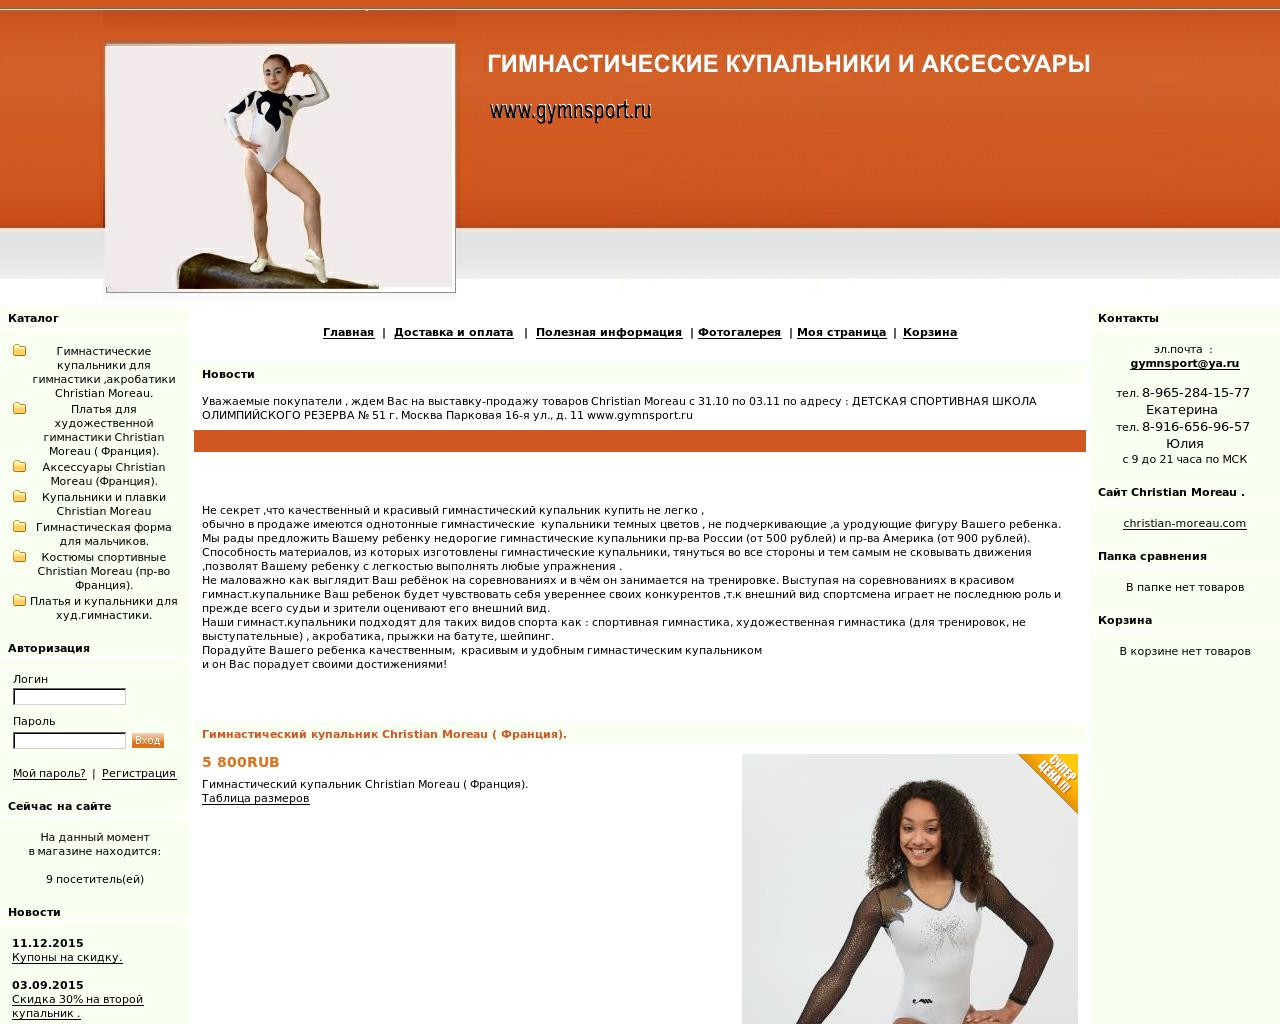 Изображение сайта gymnsport.ru в разрешении 1280x1024